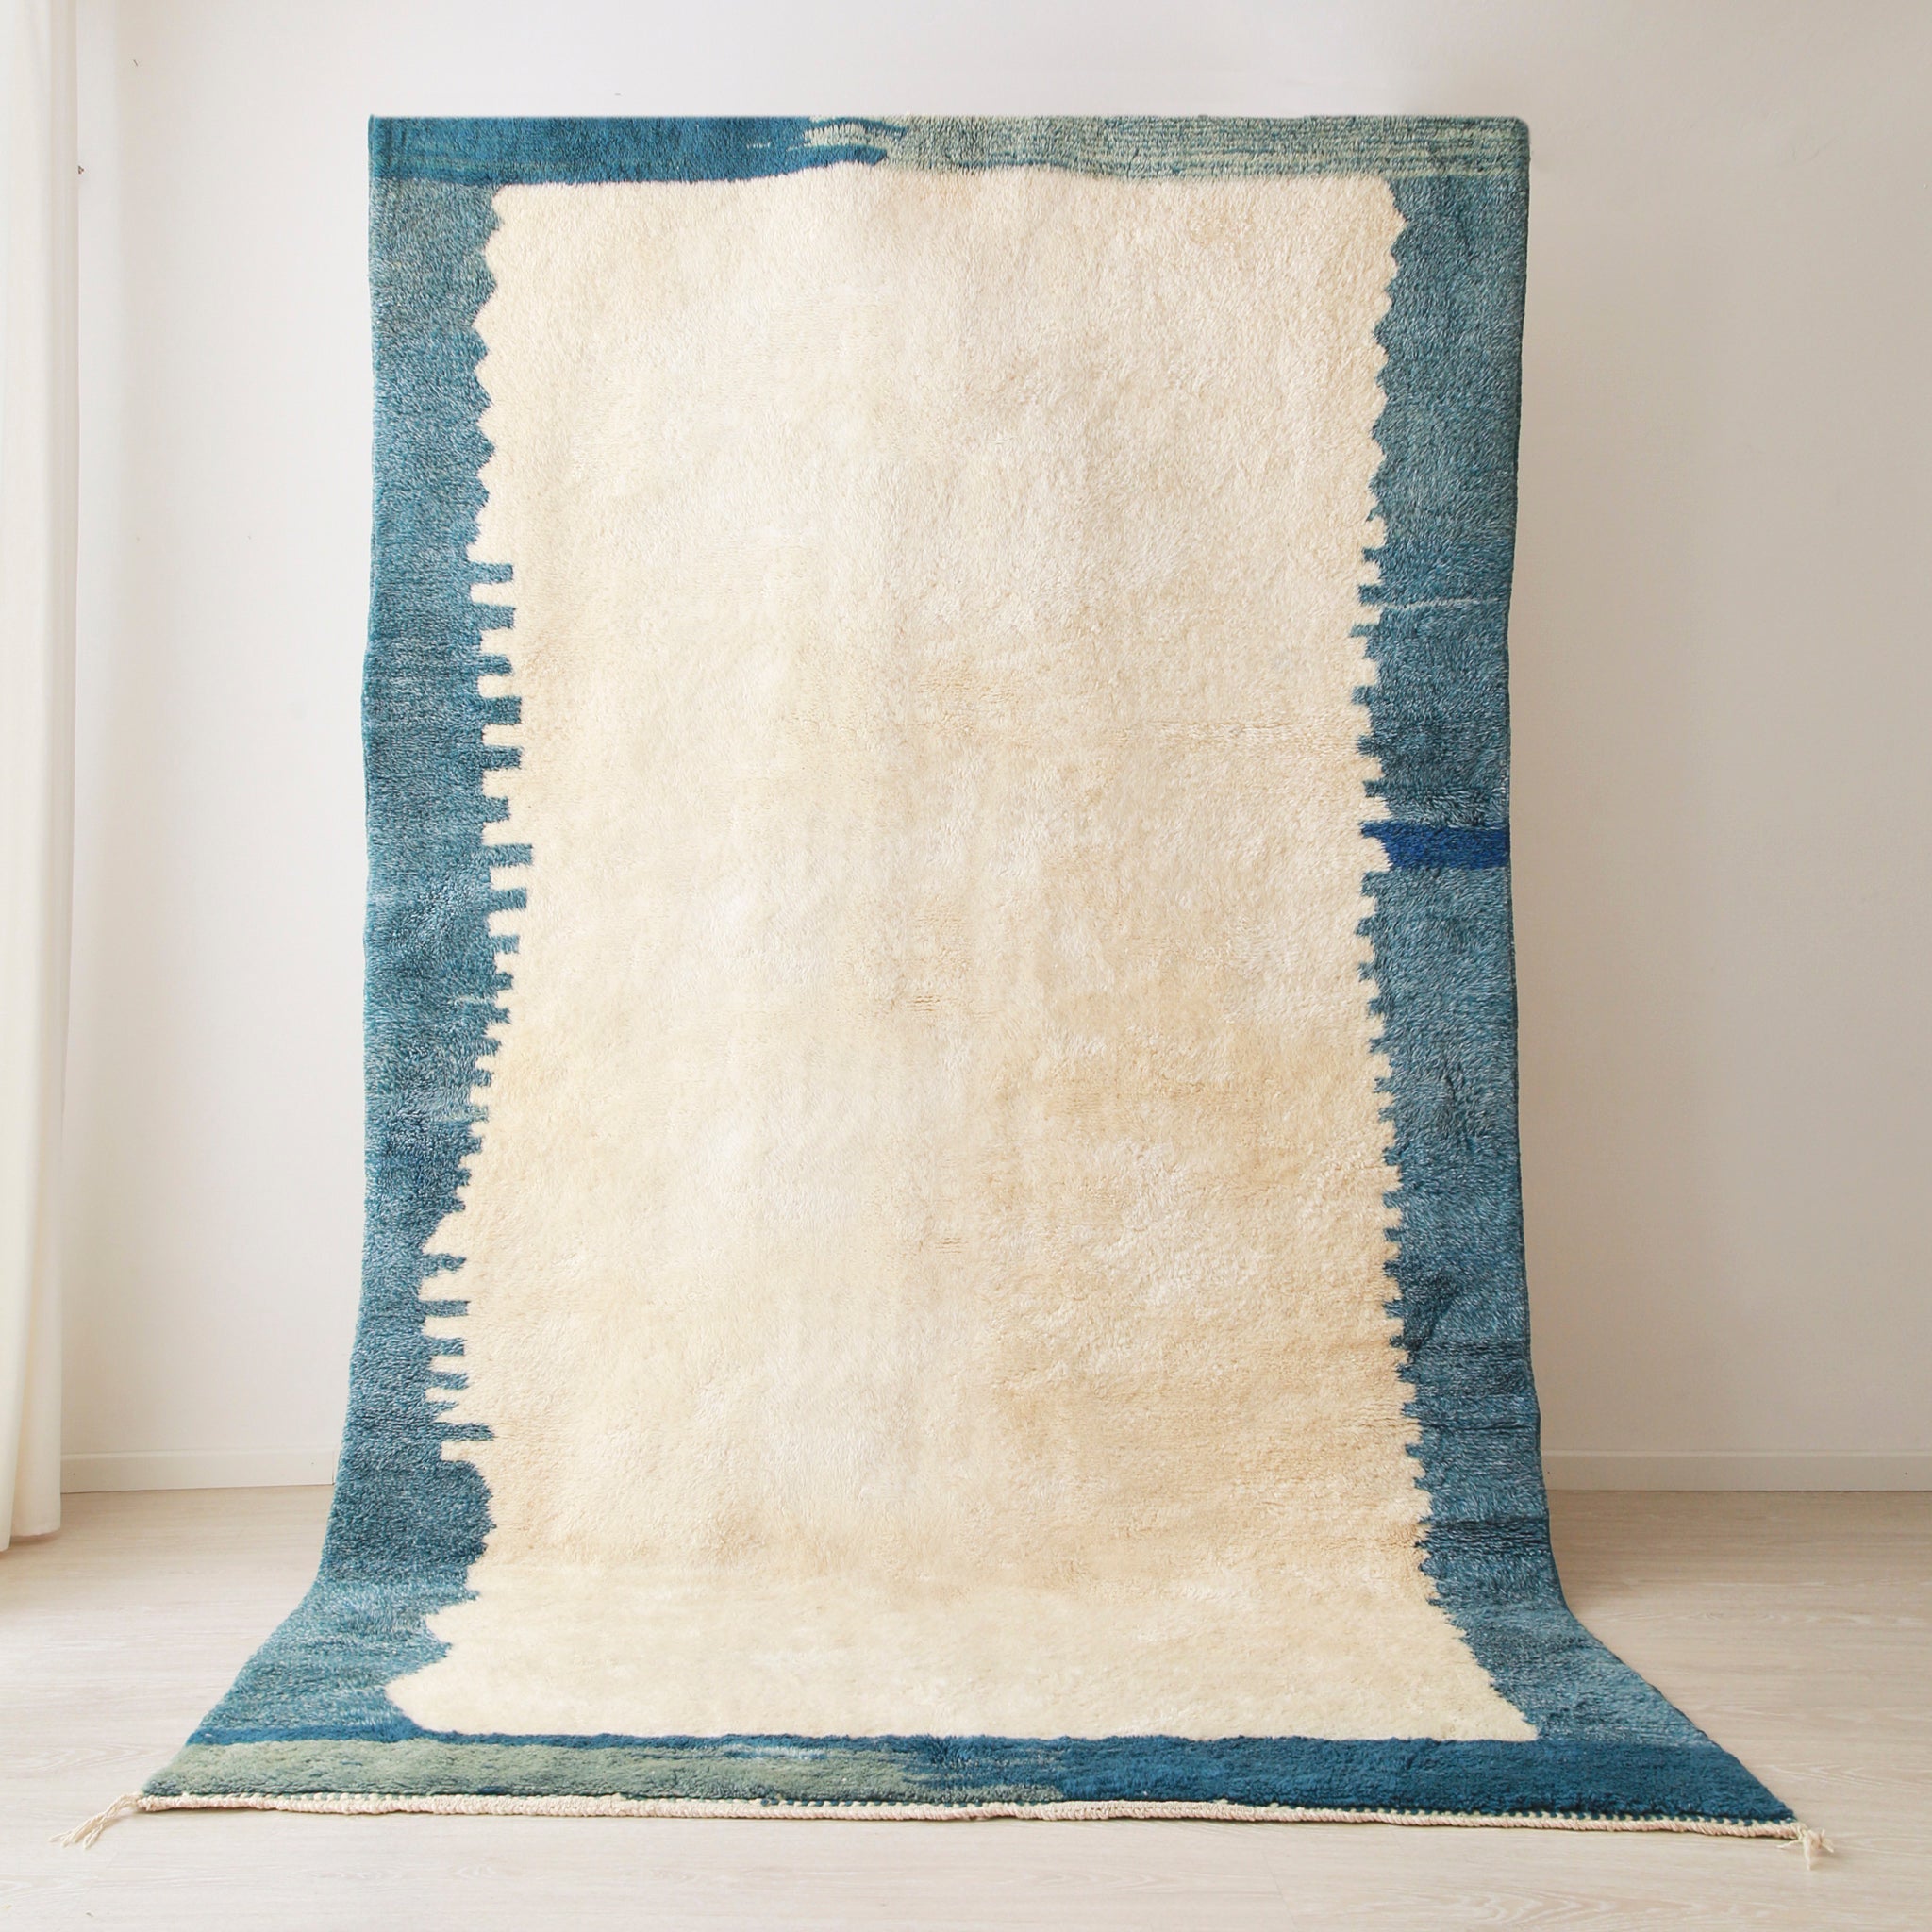 grande tappeto beni mrirt realizzato in lana bianca con un bordi di varie sfumature di blu. La tessitura del bordo ricorda uno skyline di una città